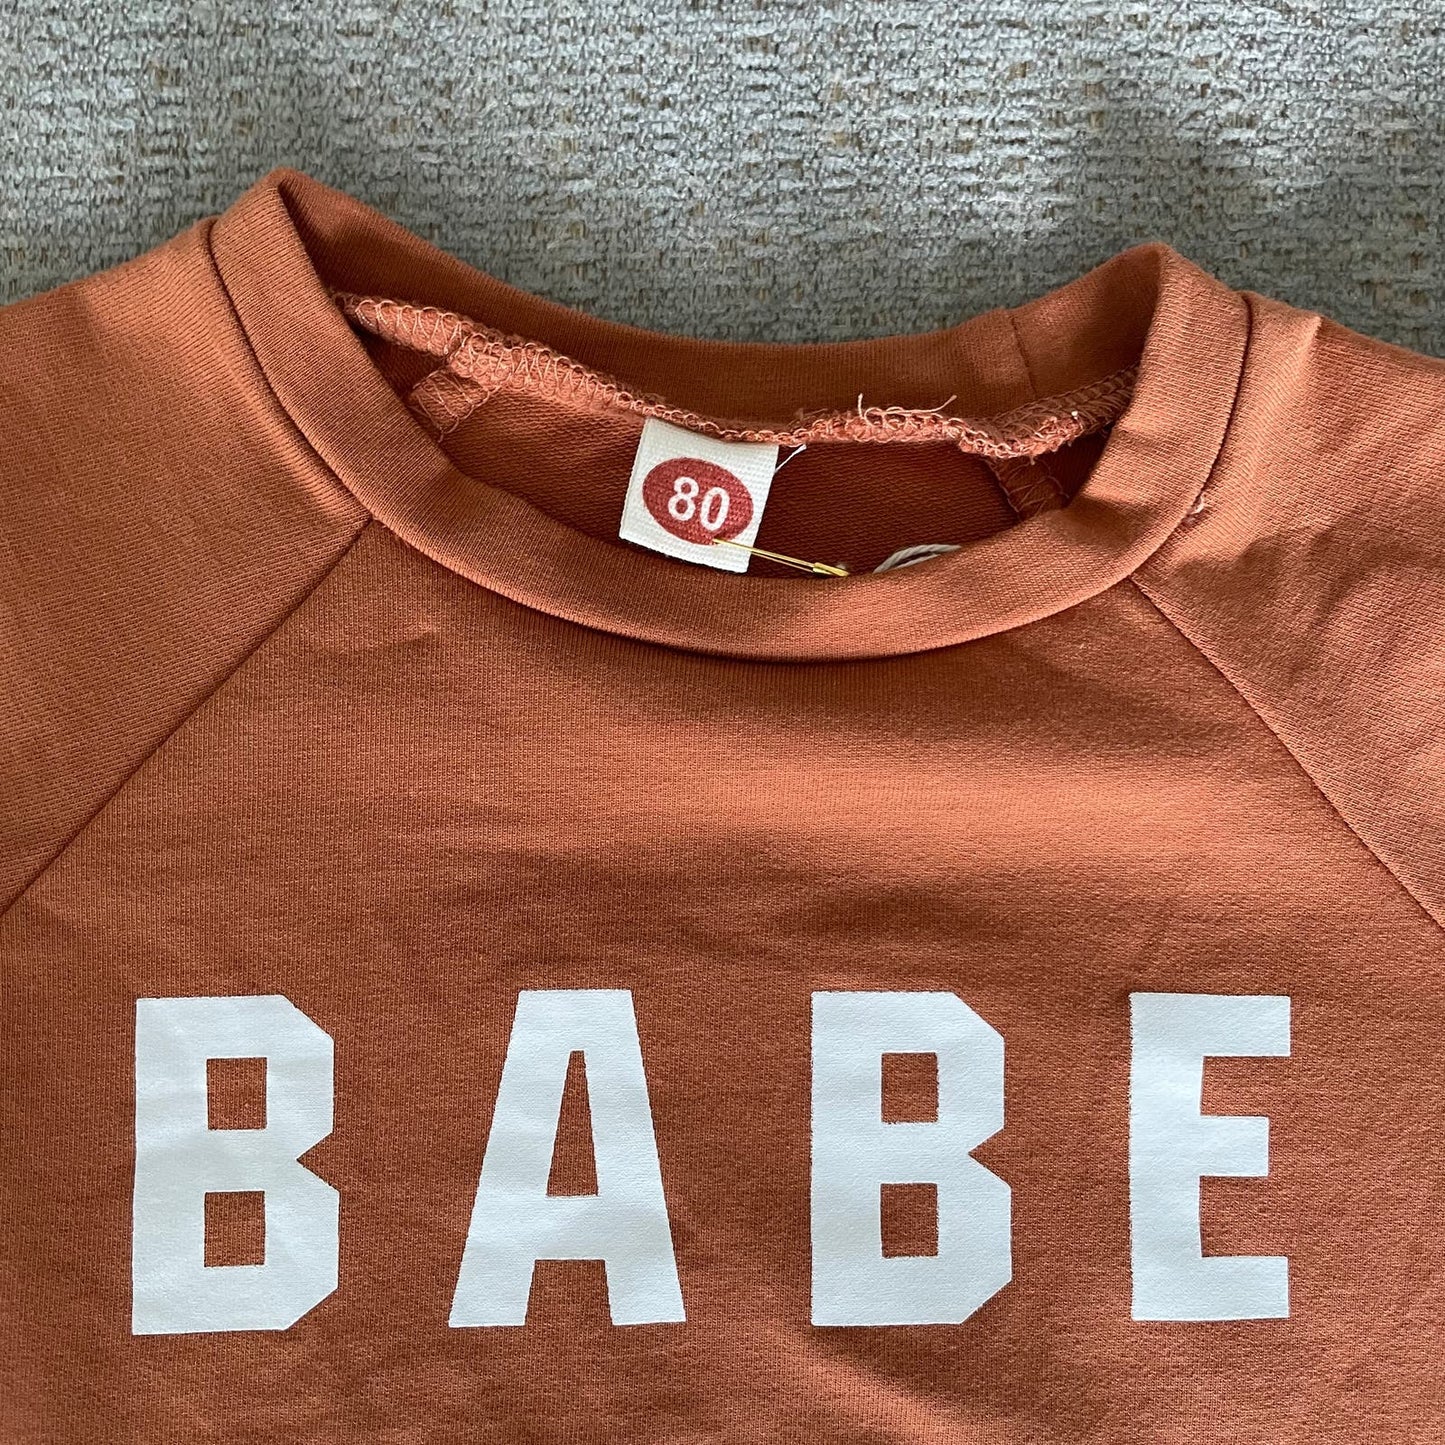 Copied - Toddler Baby Caramel BABE Sweatshirt sz 9-12 mos